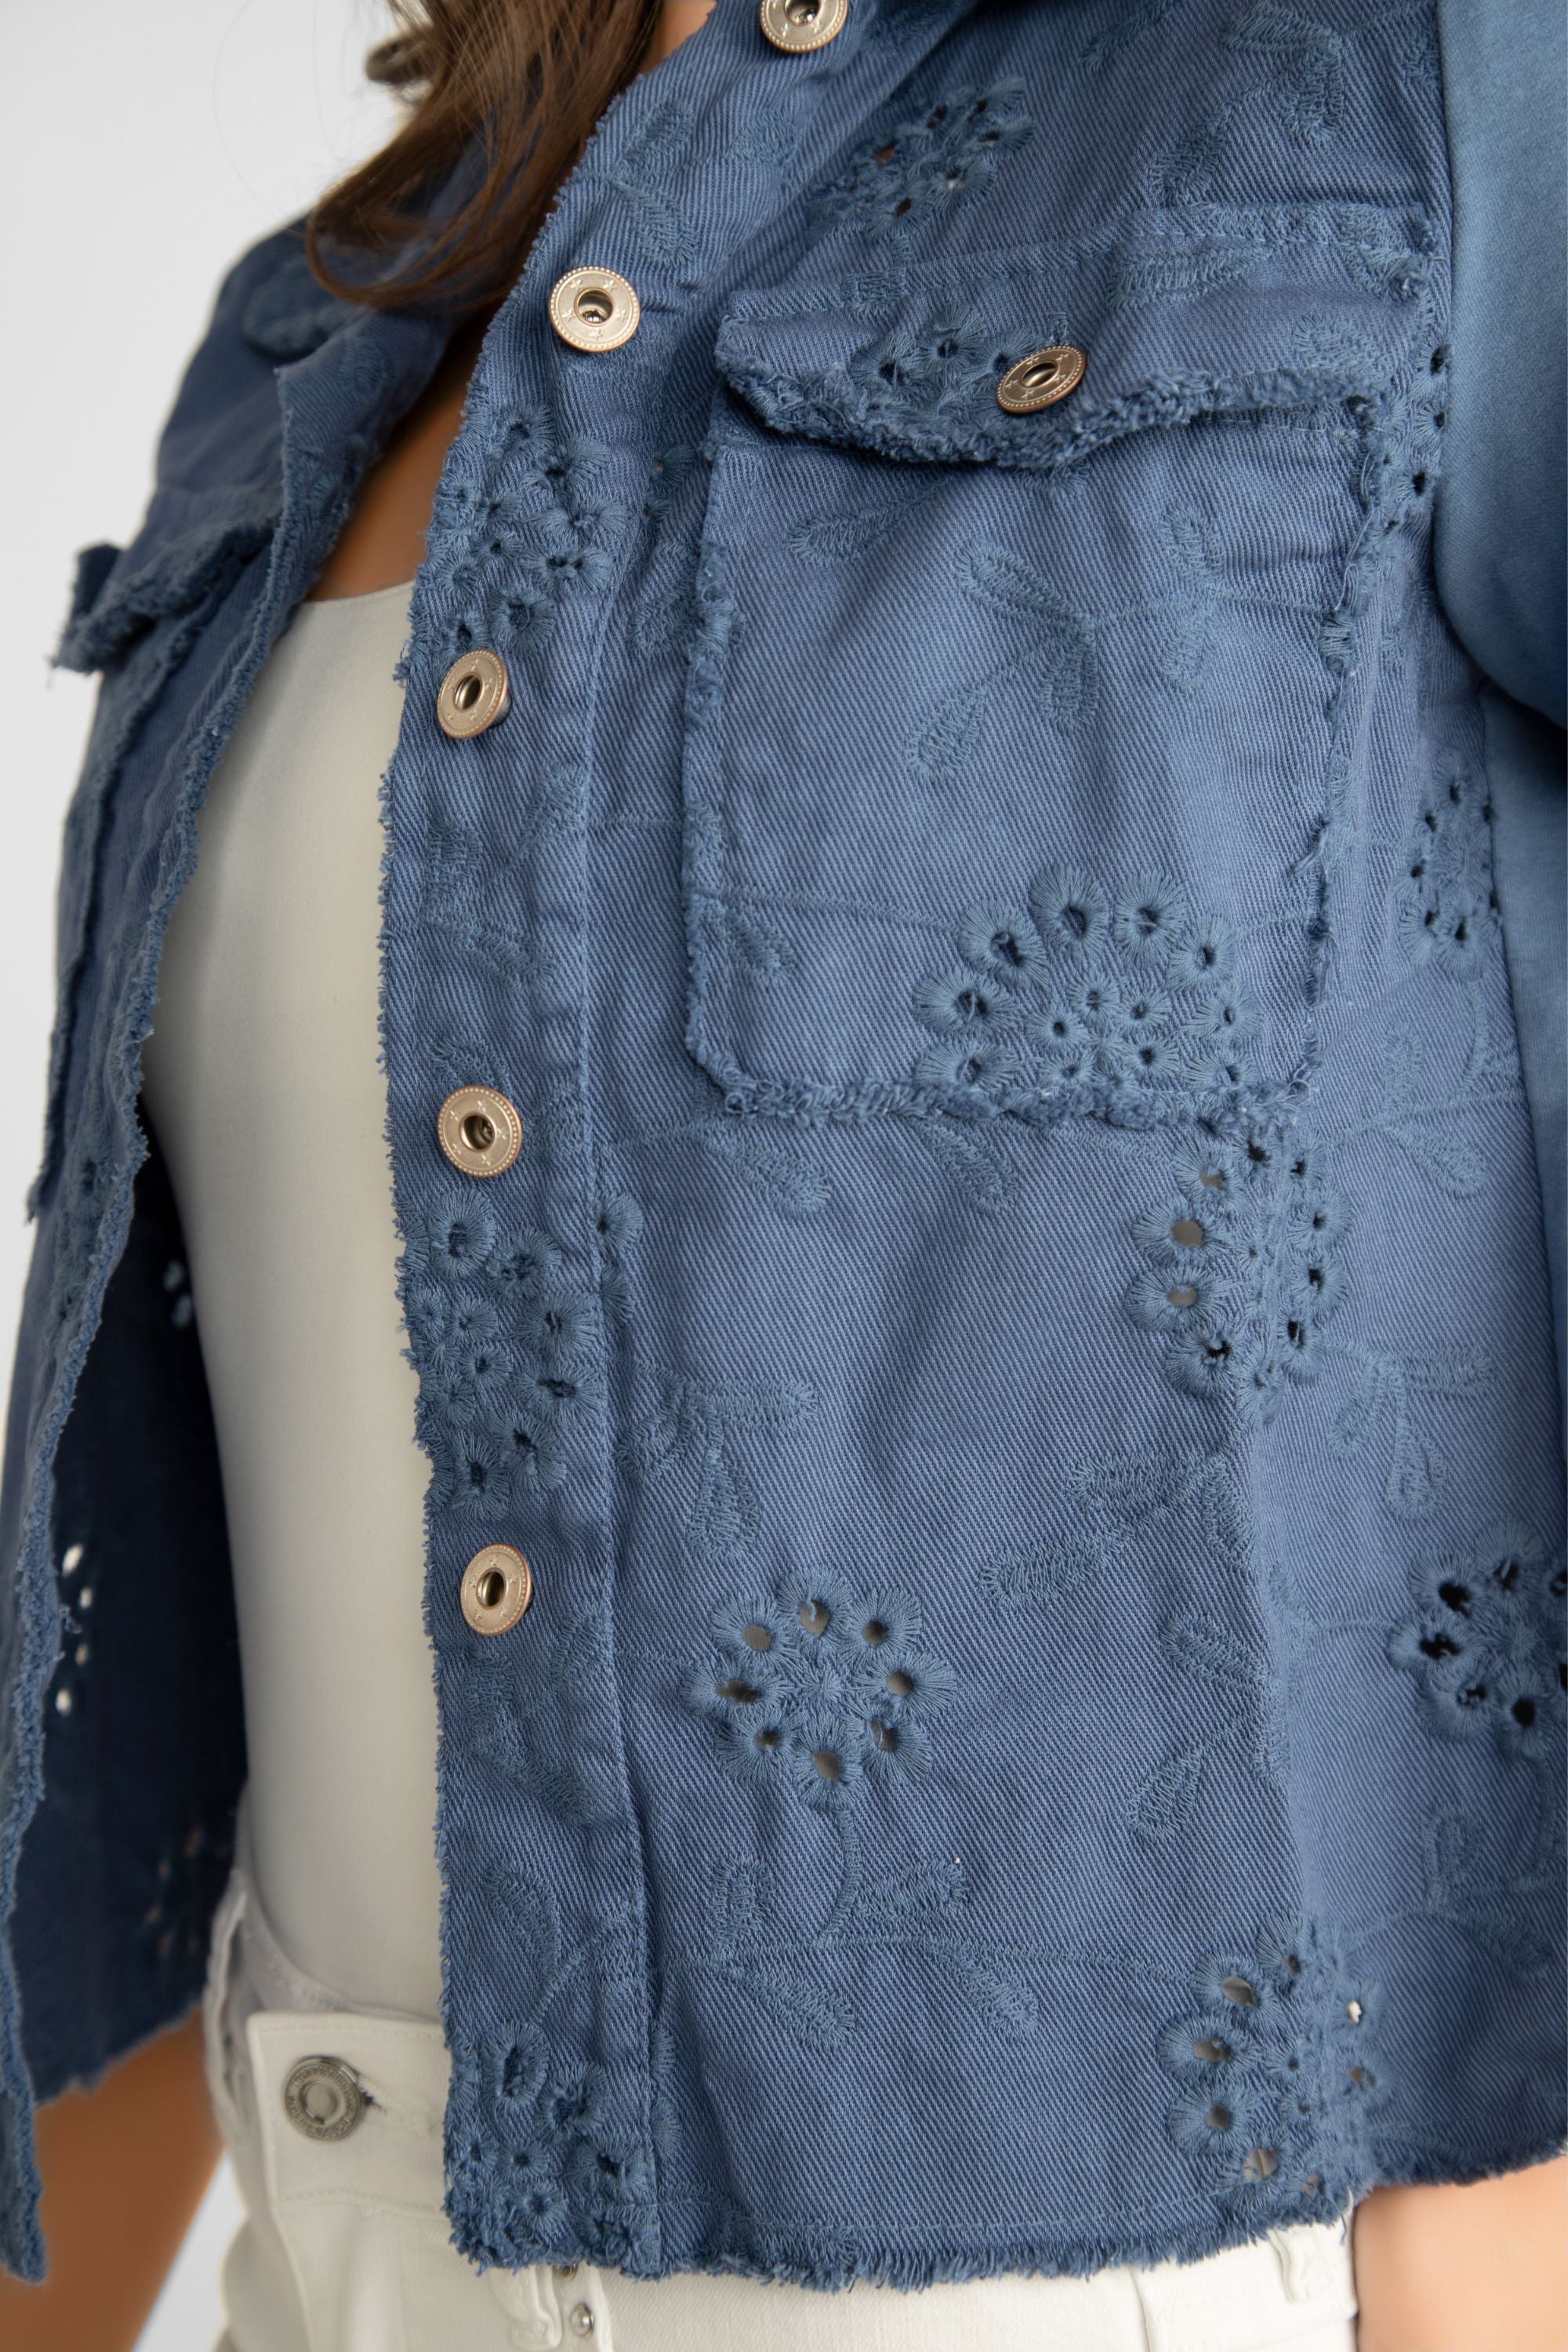 Femme Fatale (S1-23JKT) Women's Long Sleeve, Button Up Eyelet Lace Jean Jacket in Indigo Blue